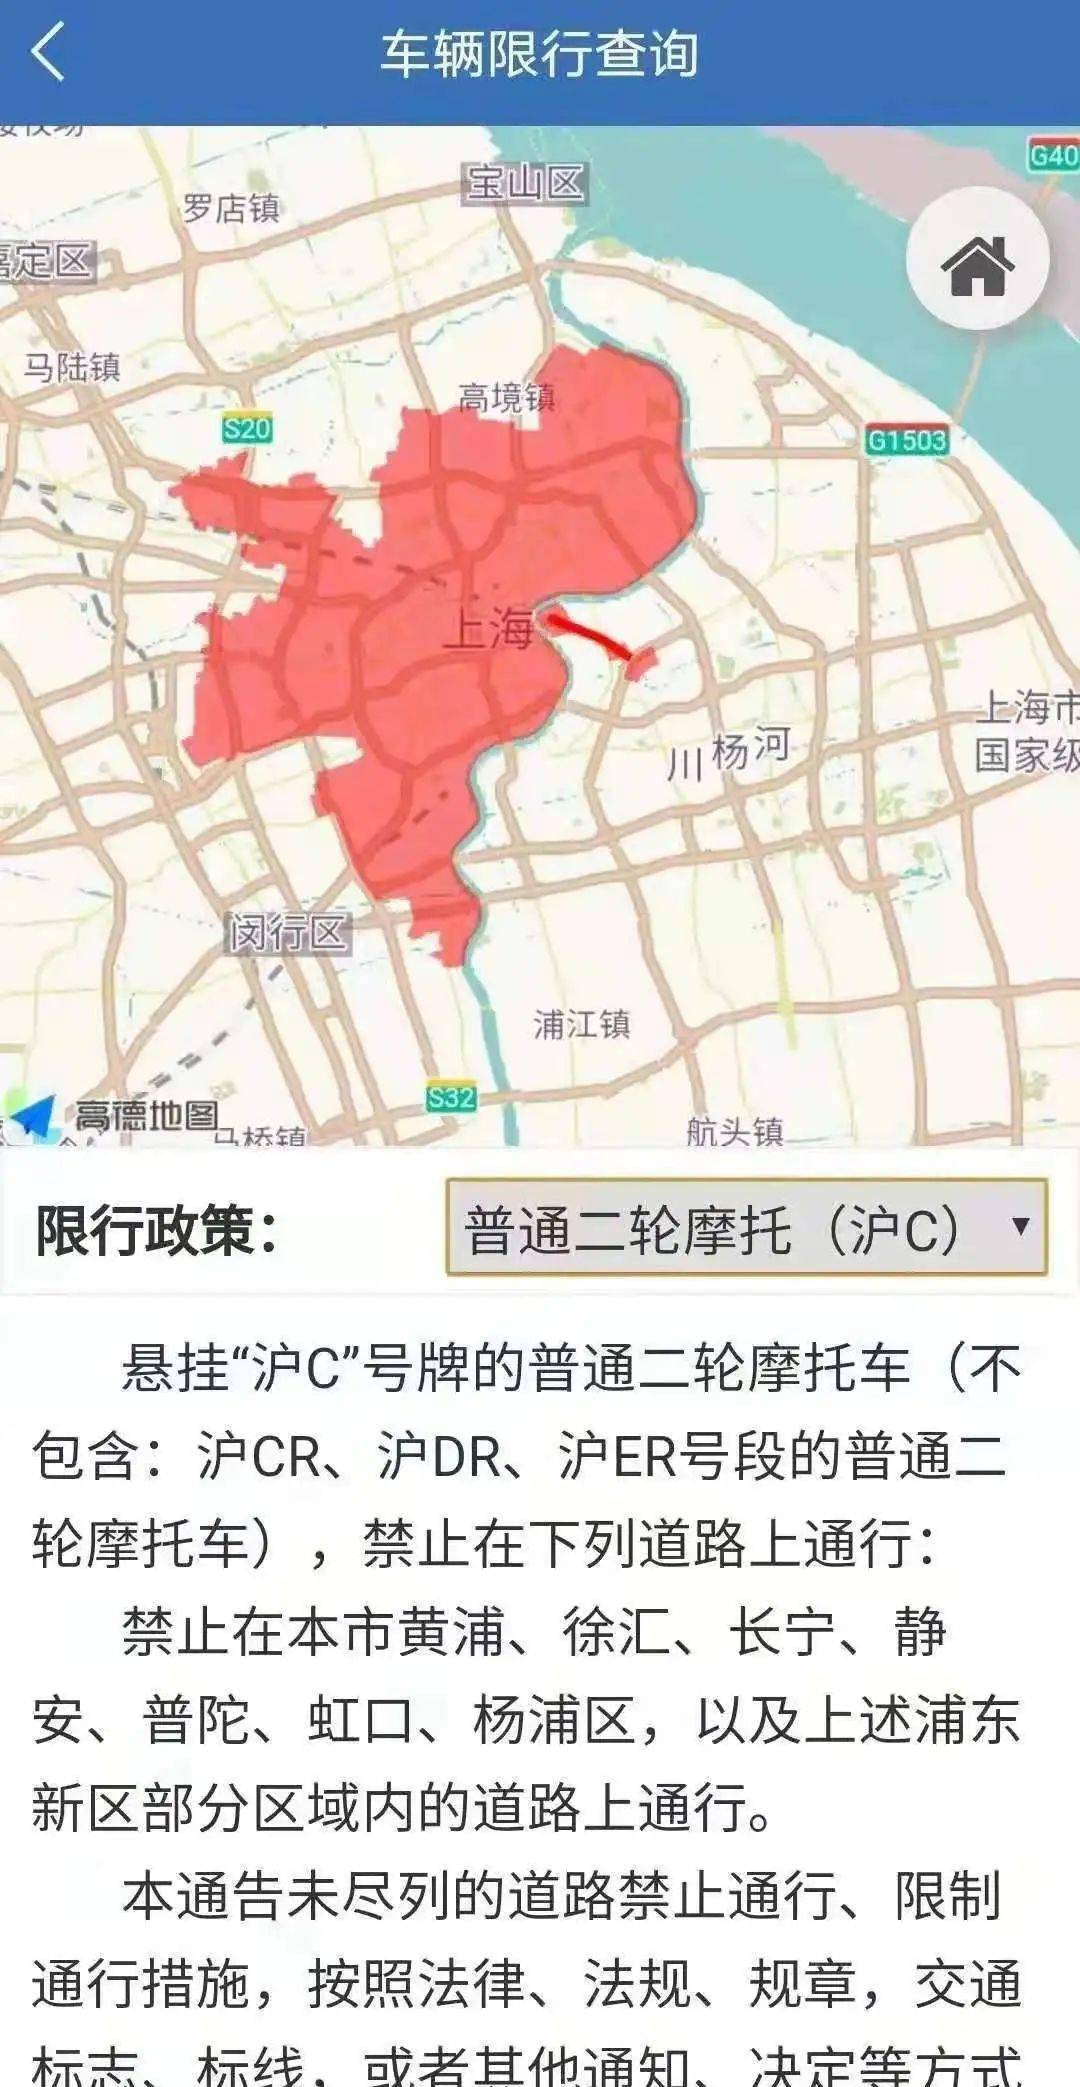 上海市禁摩区域图图片